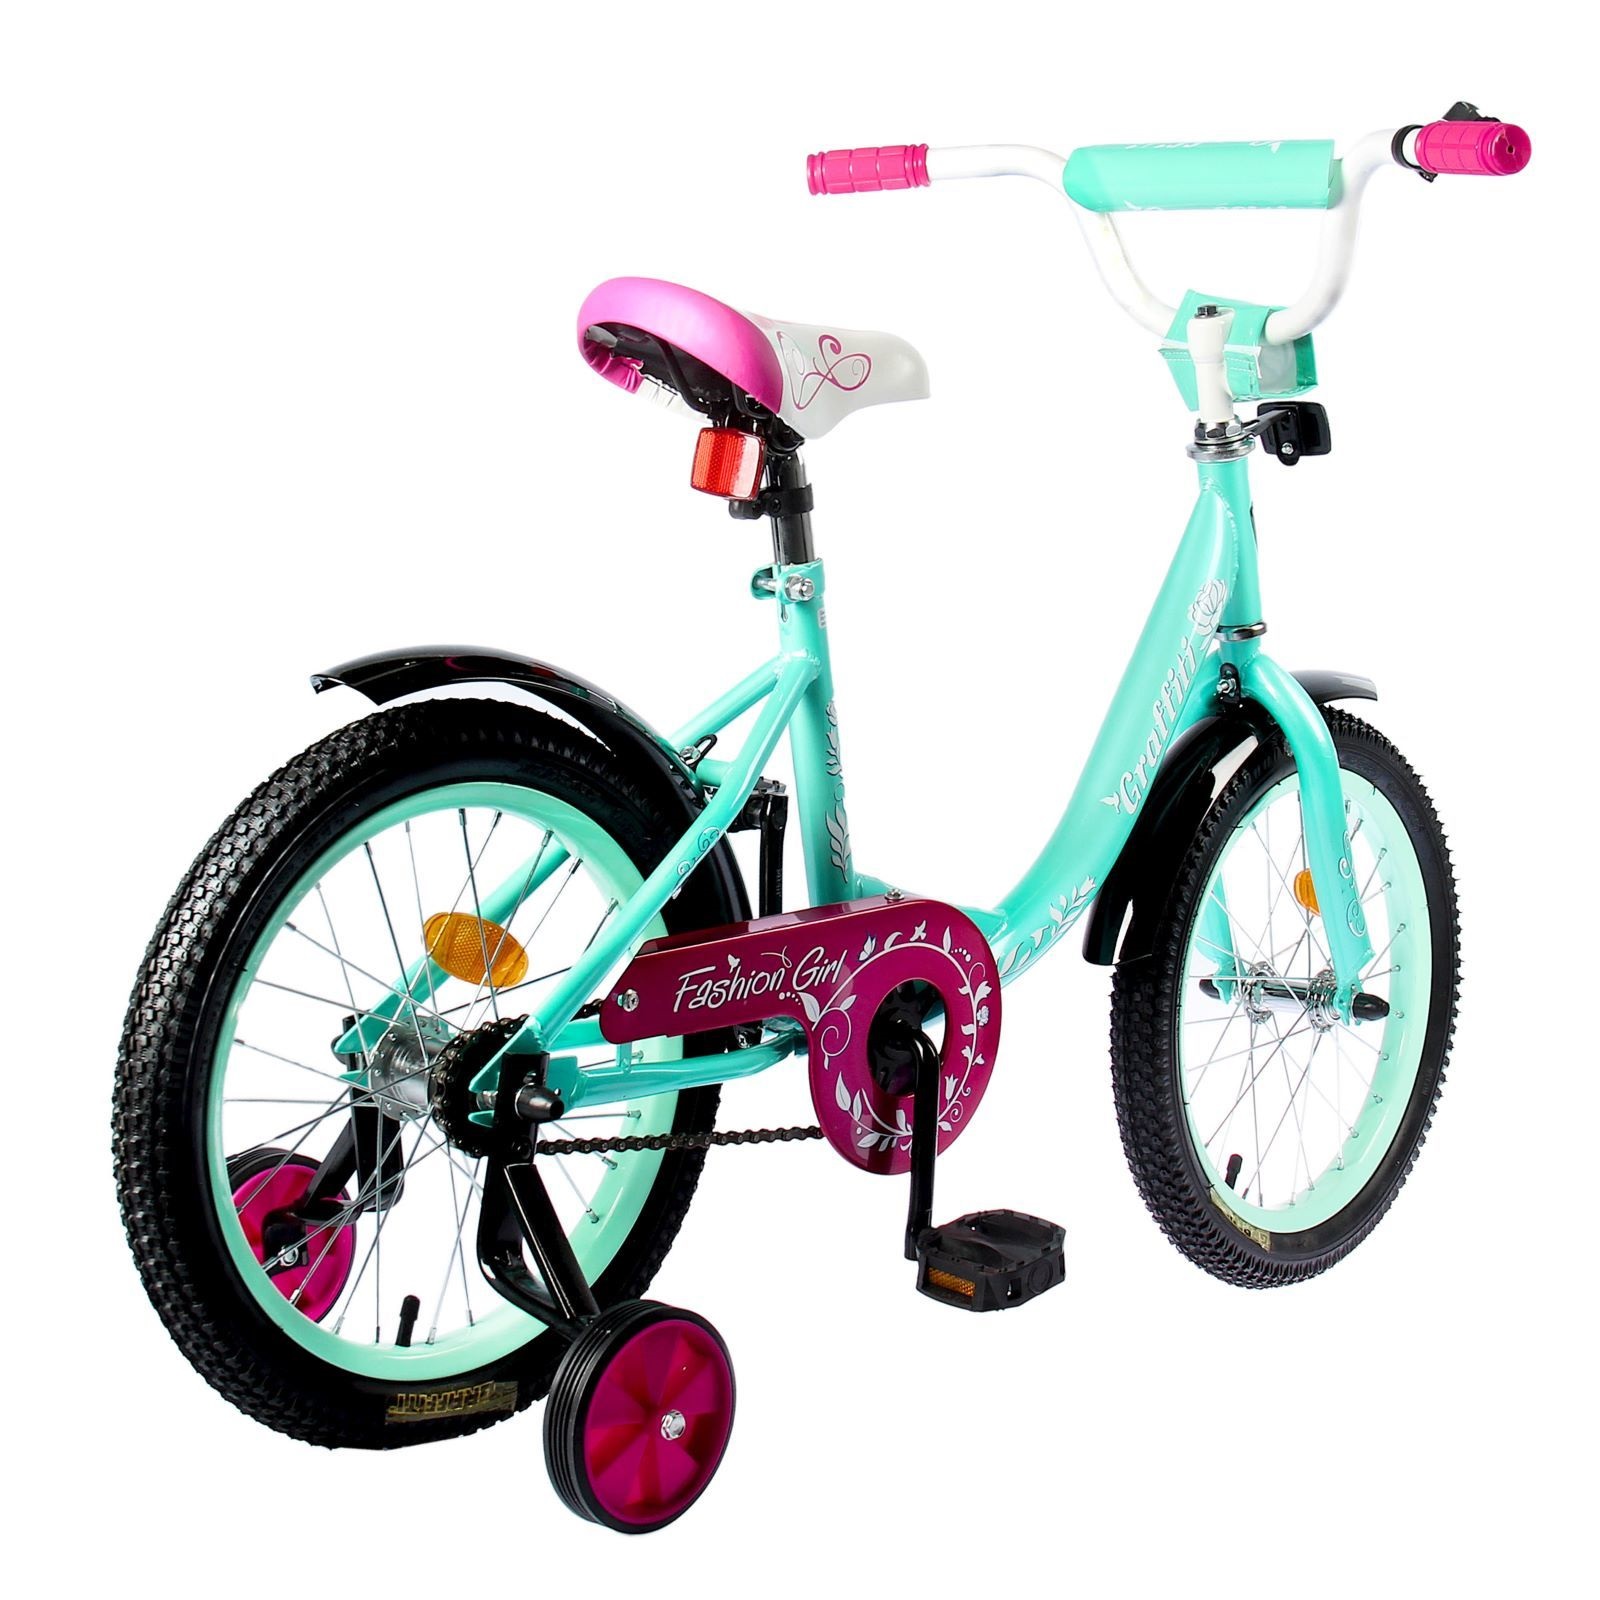 Какой велосипед купить ребенку 7 лет. Велосипед Graffiti Fashion girl. Велосипед для девочки. Детский велосипед для девочки. Велосипед детский двухколесный.